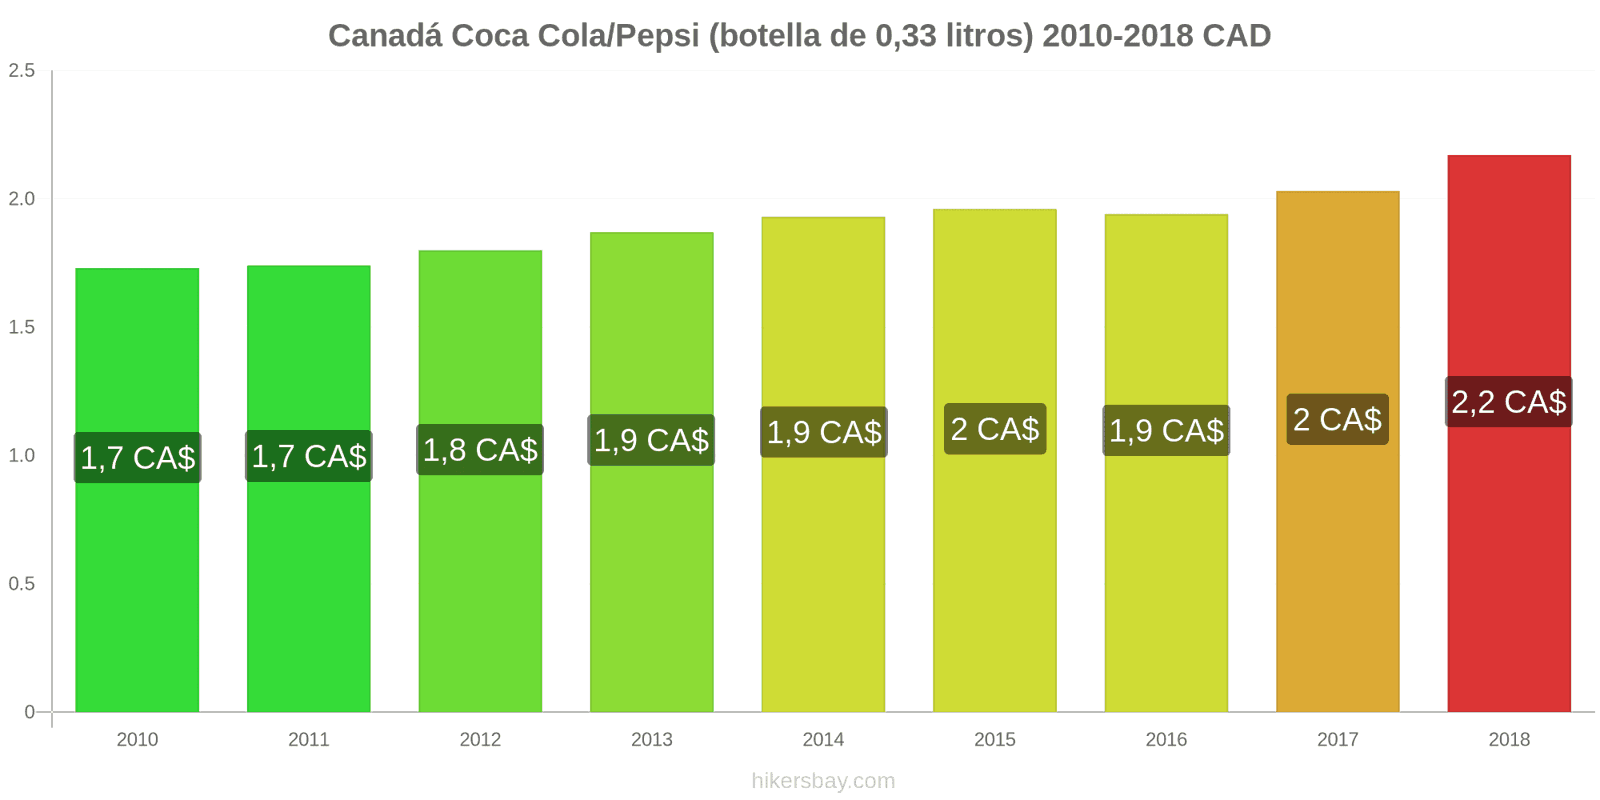 Canadá cambios de precios Coca-Cola/Pepsi (botella de 0.33 litros) hikersbay.com